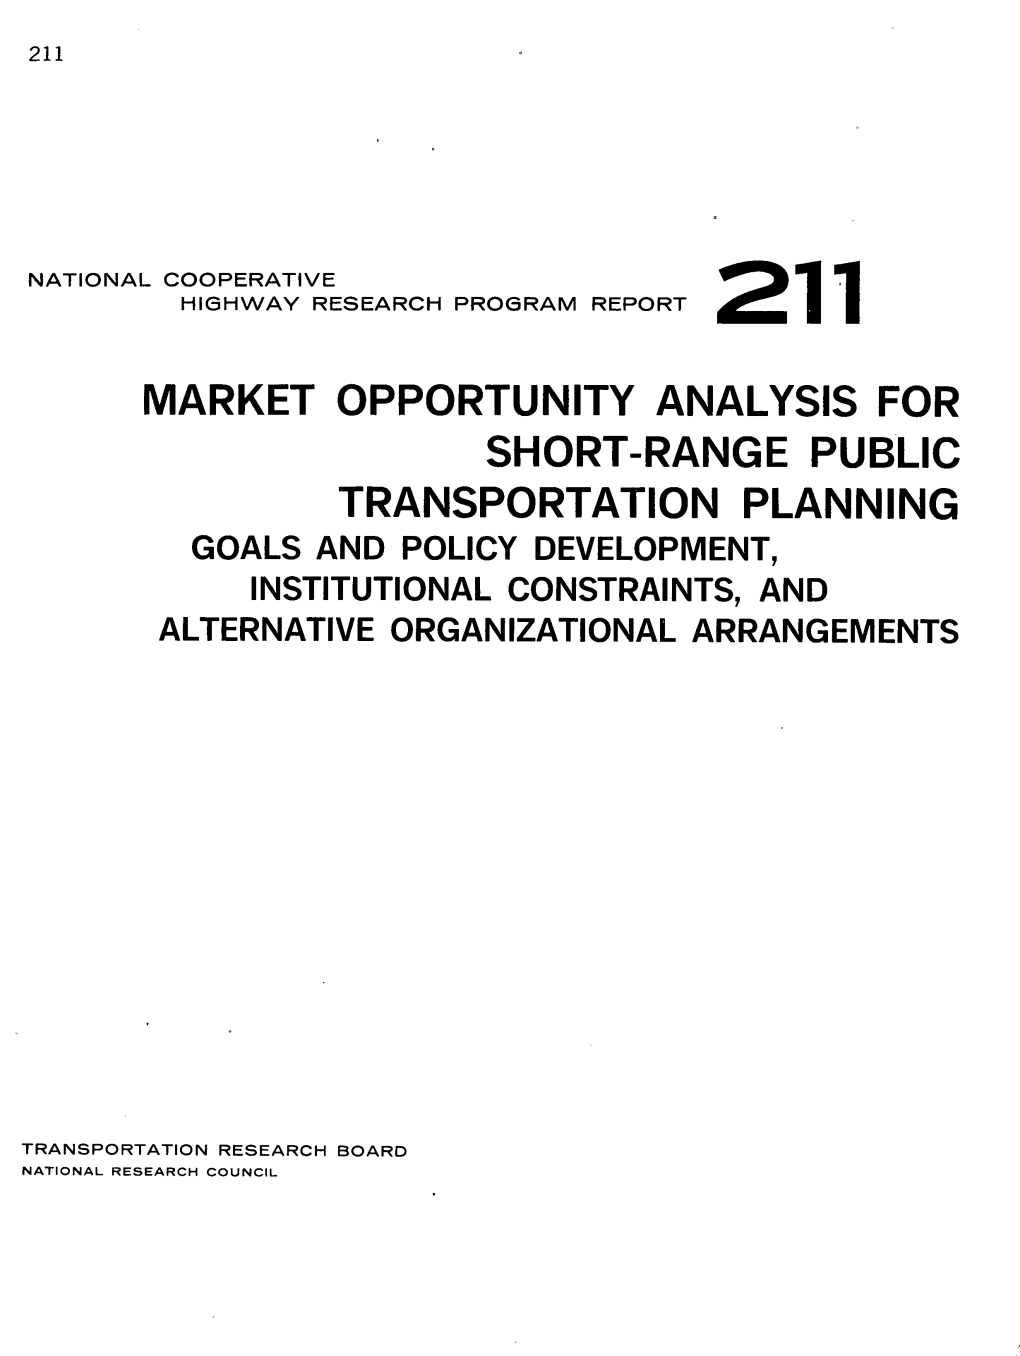 Market Opportunity Analysis for Short-Range Public